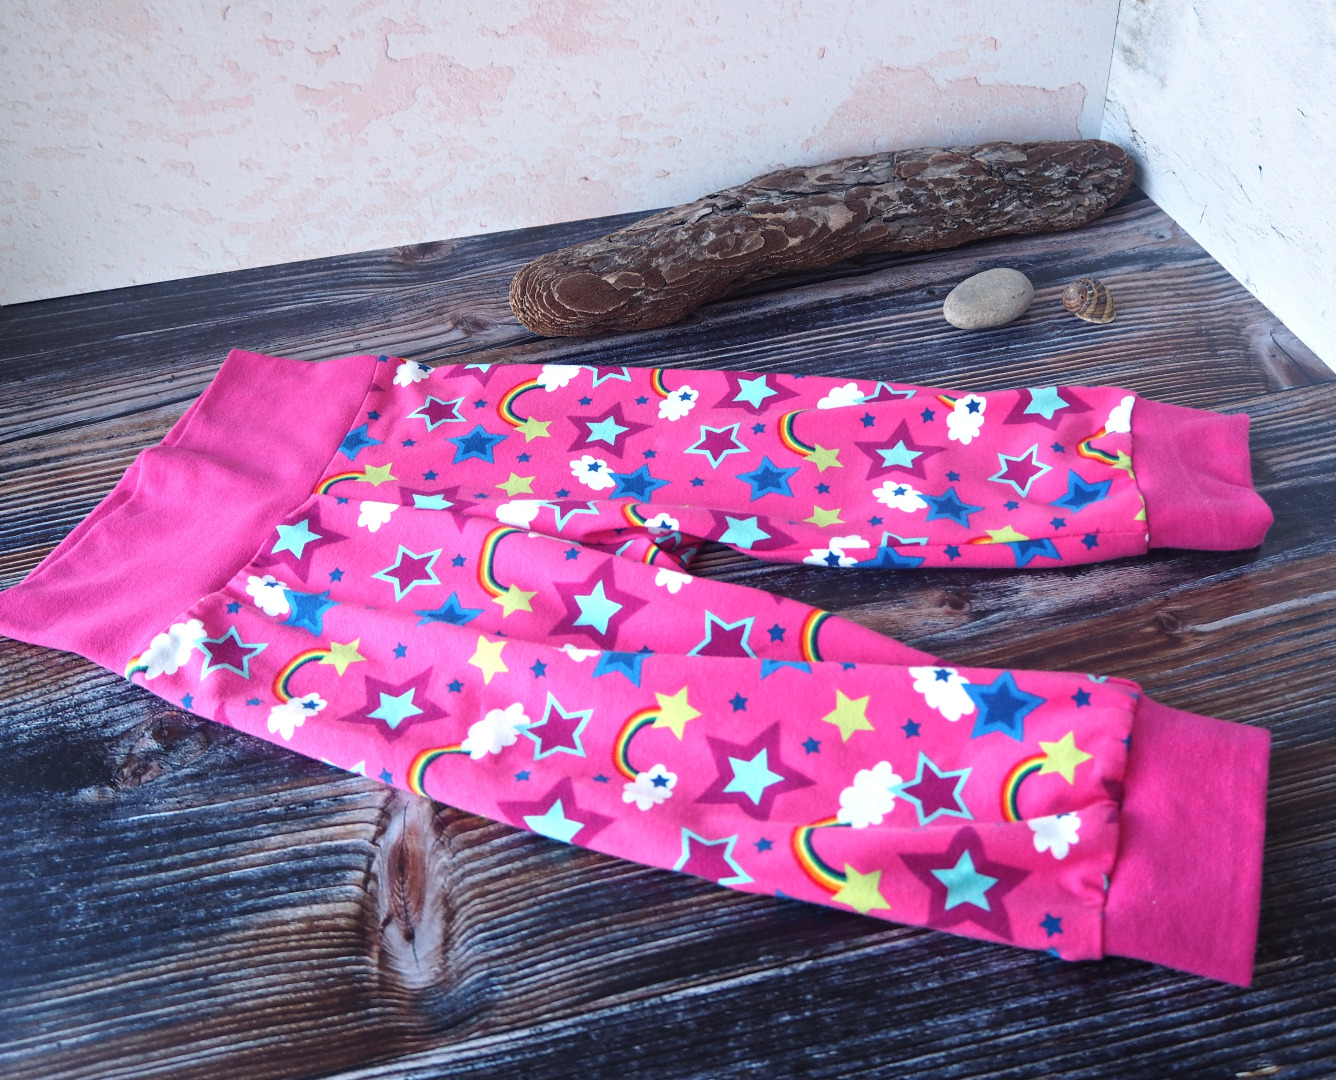 Pumphose 3/4 Länge für Kinder kurze Pumphose für kleine Mädchen in pink gemustert mit Regenbögen und Sternen Größe 110 - 116